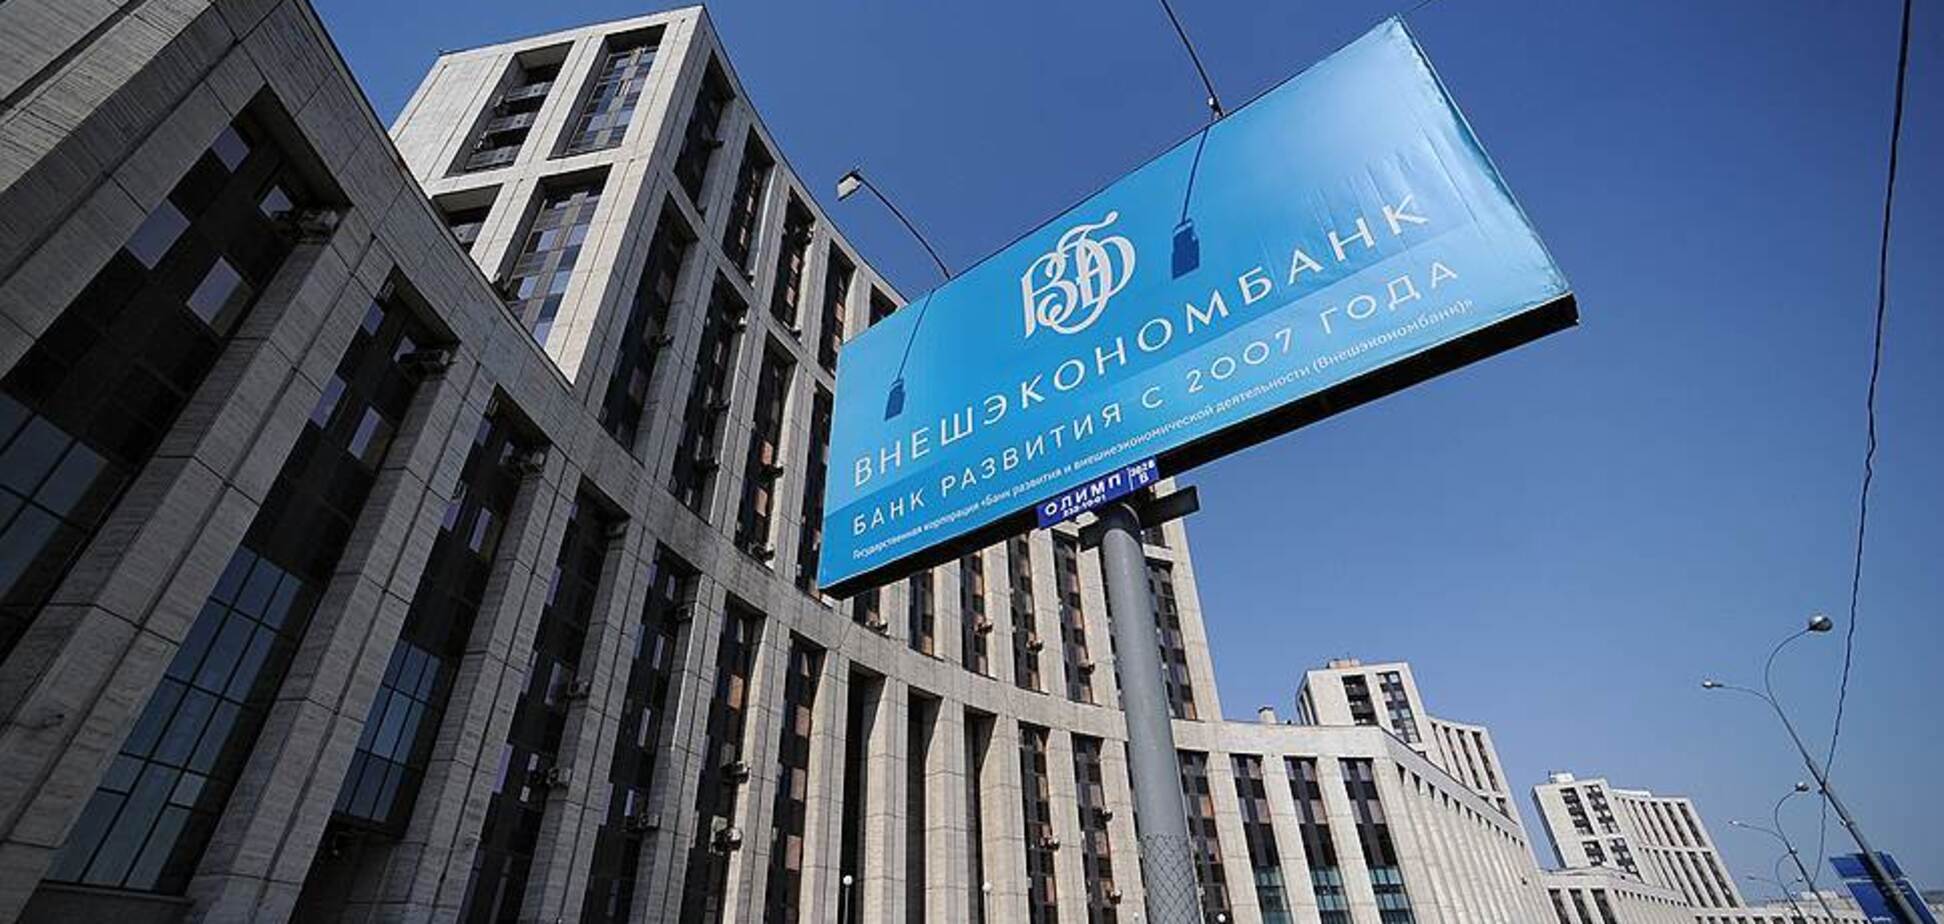 'Вклады не выдает!' Крупный банк России решил закрыть 'дочку' в Украине